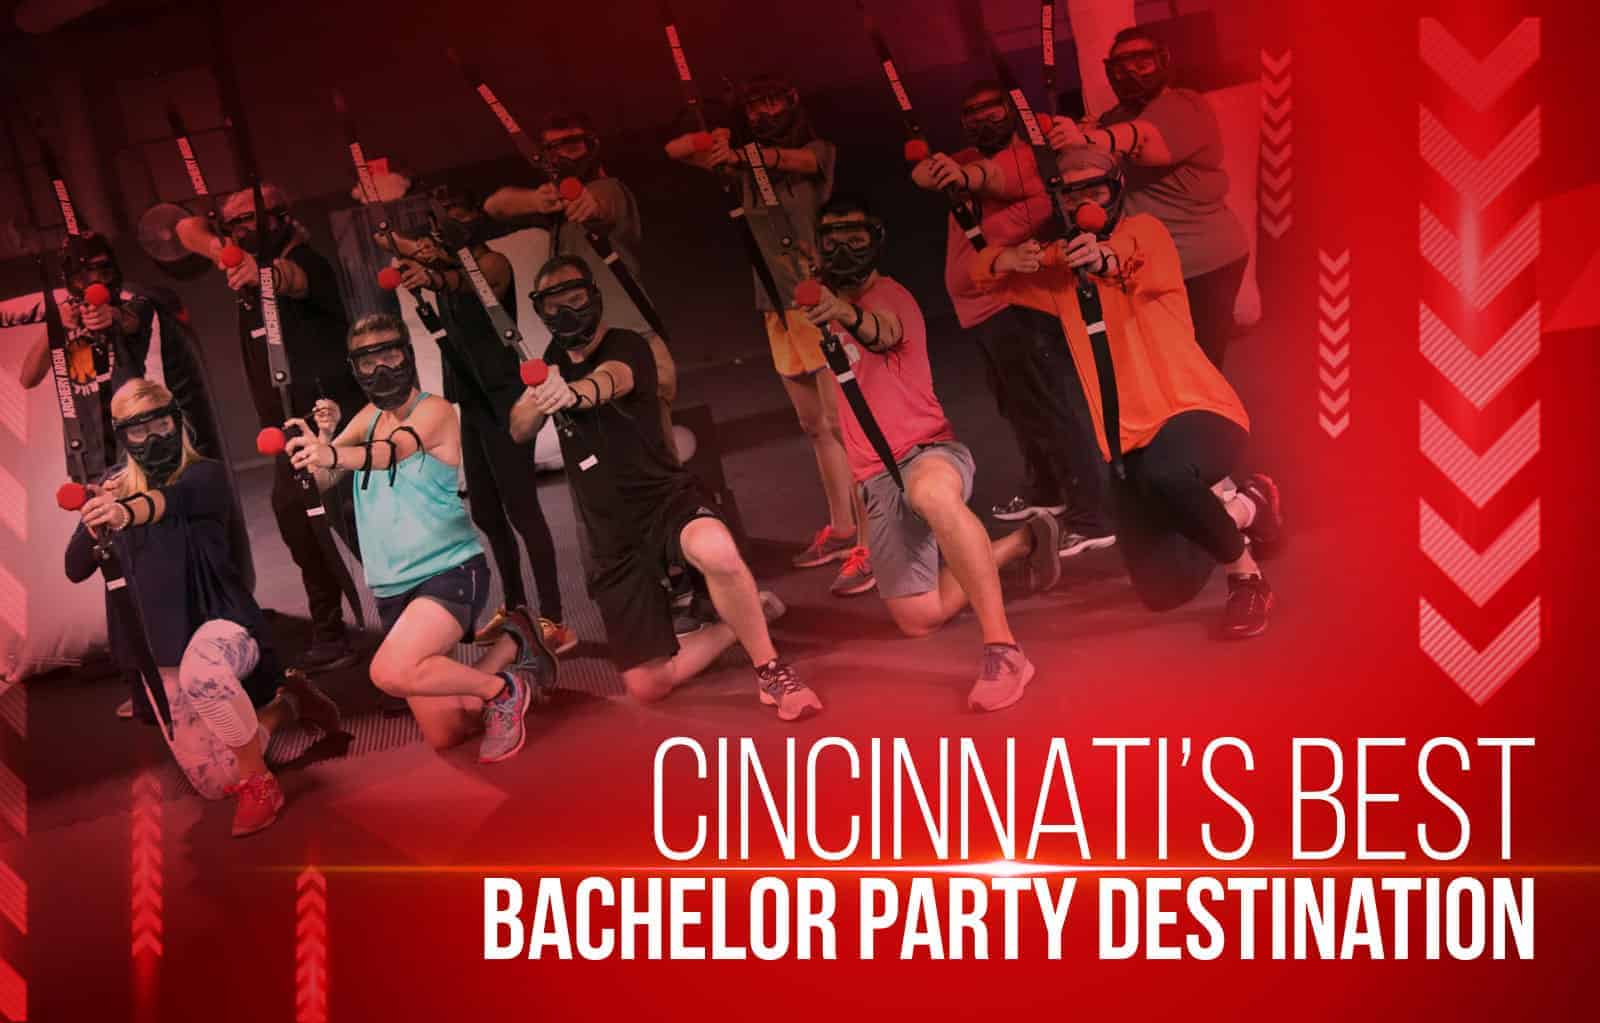 Cincinnati’s Best Bachelor Party Destination